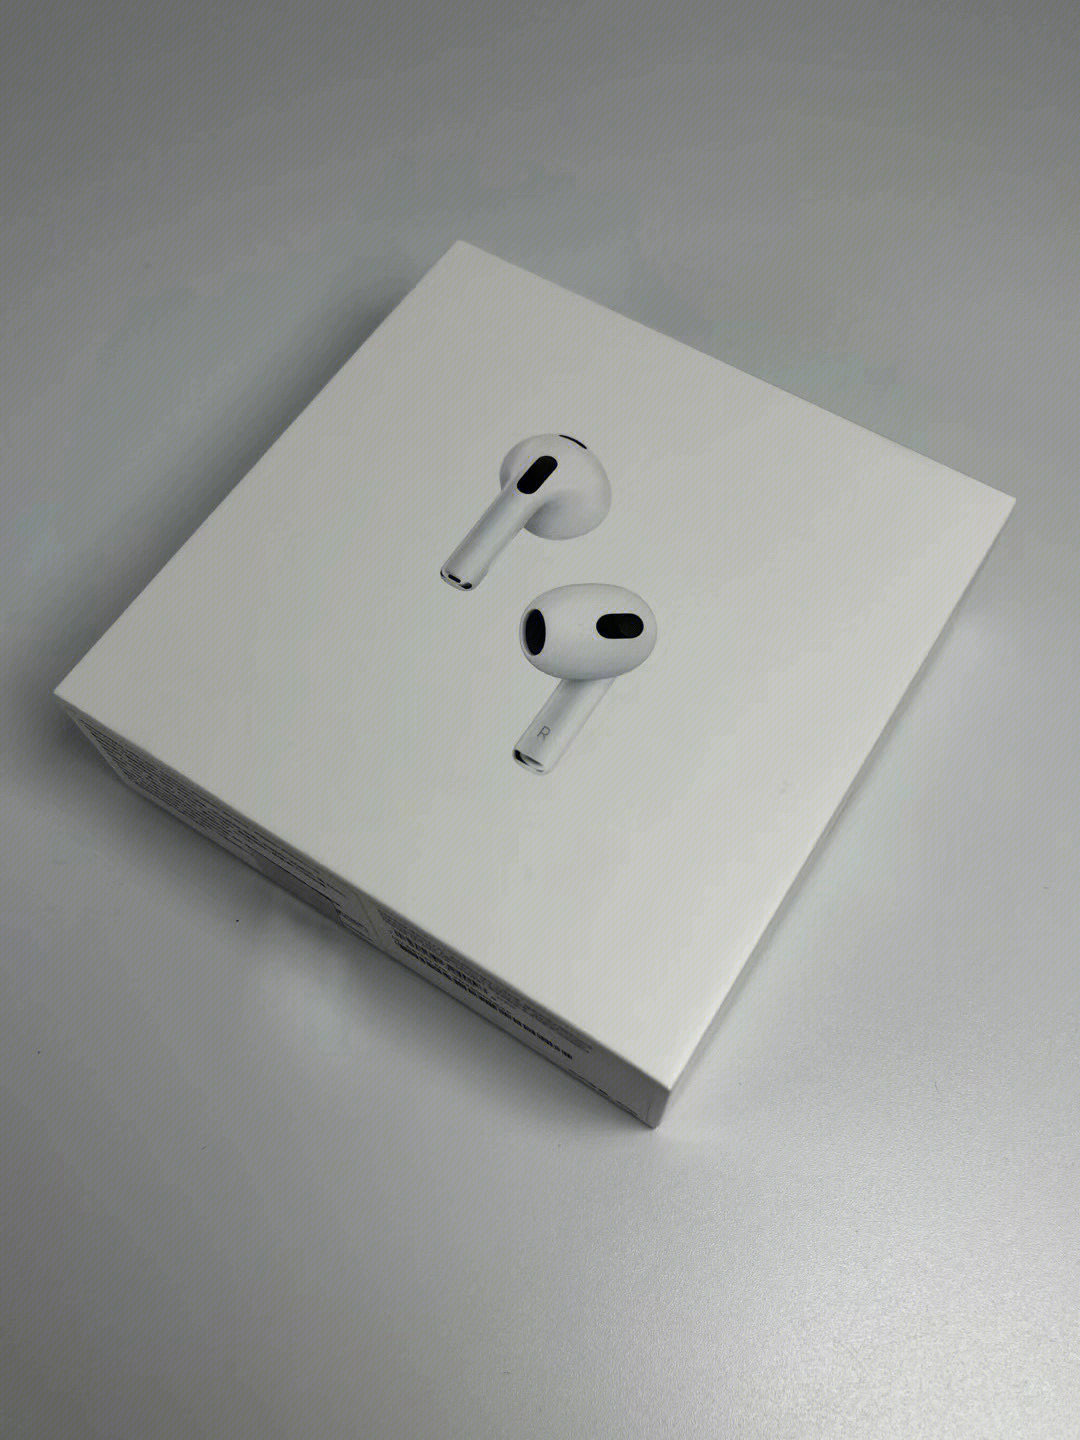 苹果airpods三代蓝牙耳机全新